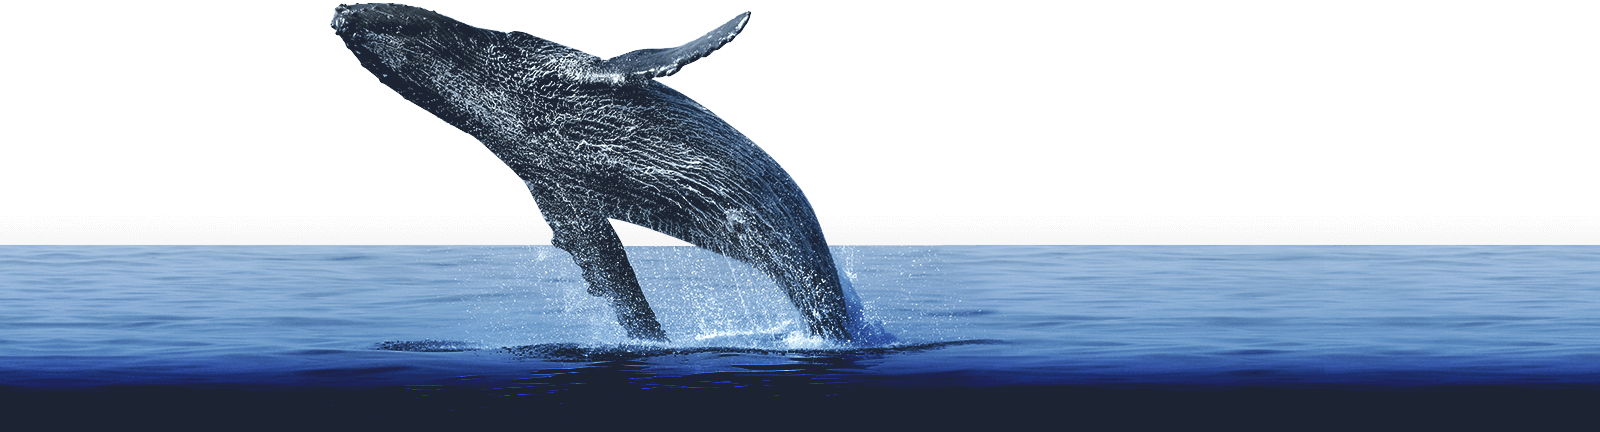 whales-samana-bg